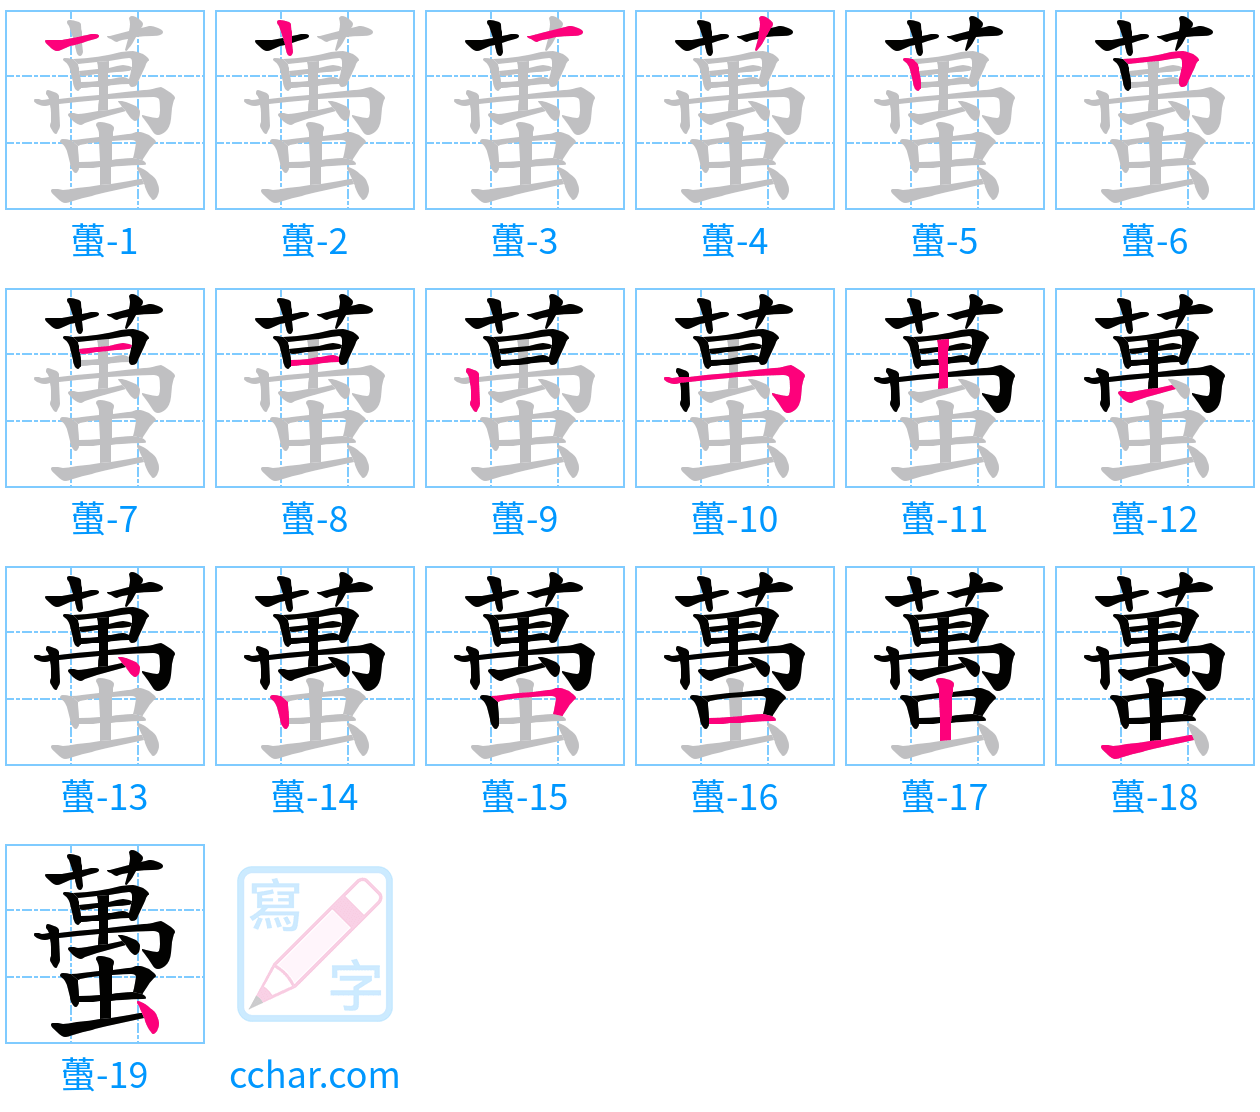 蠆 stroke order step-by-step diagram